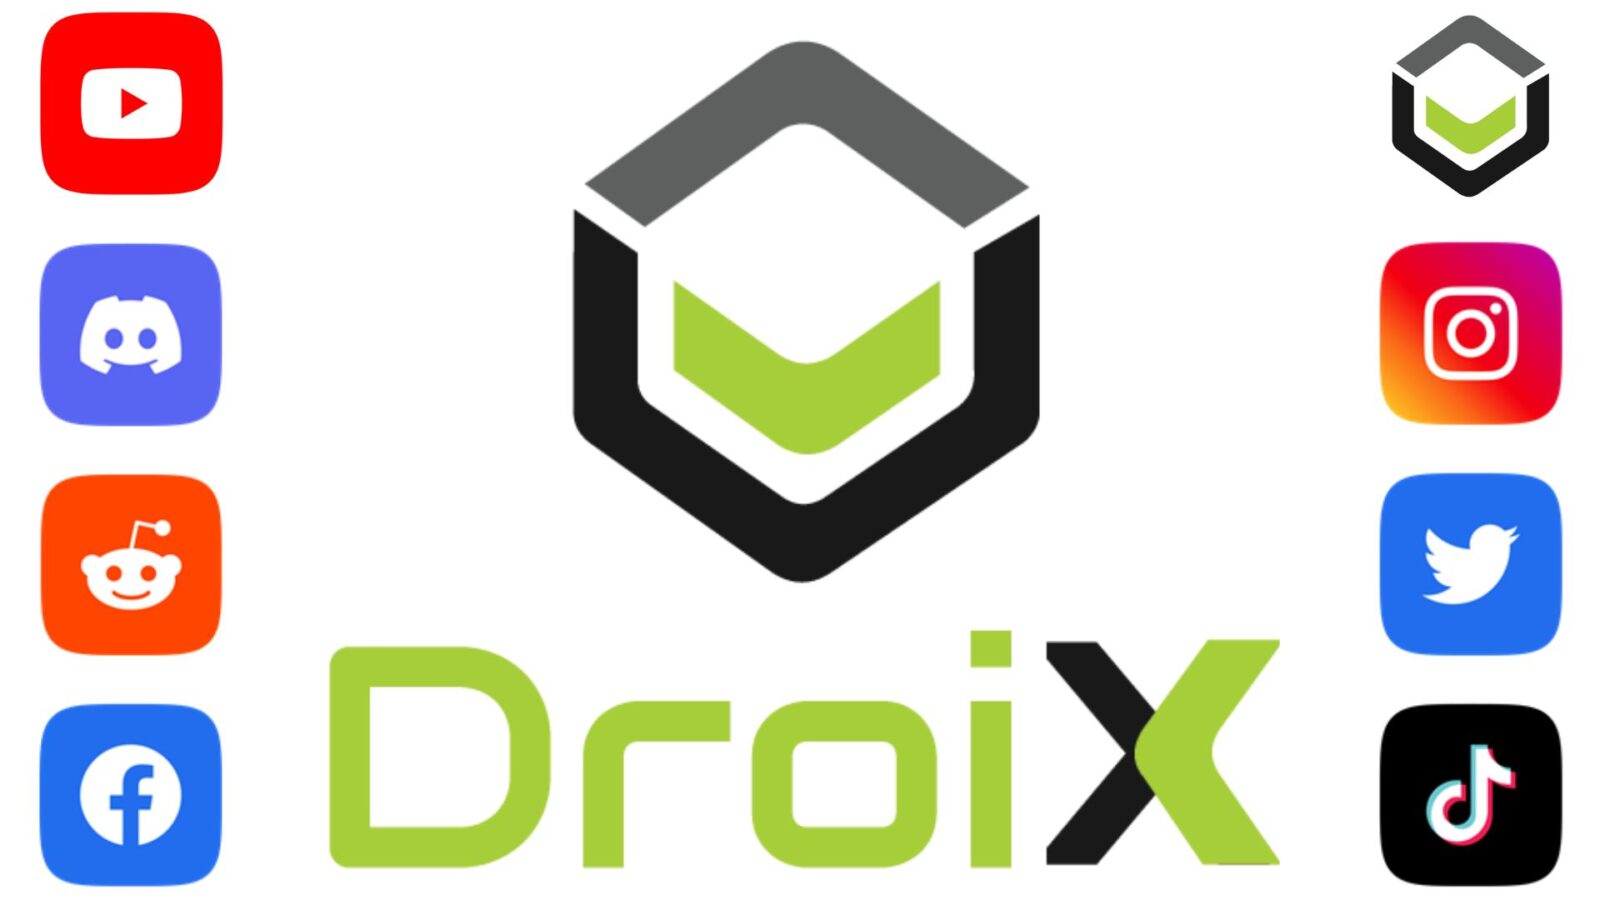 DroiX Social Media Platforms